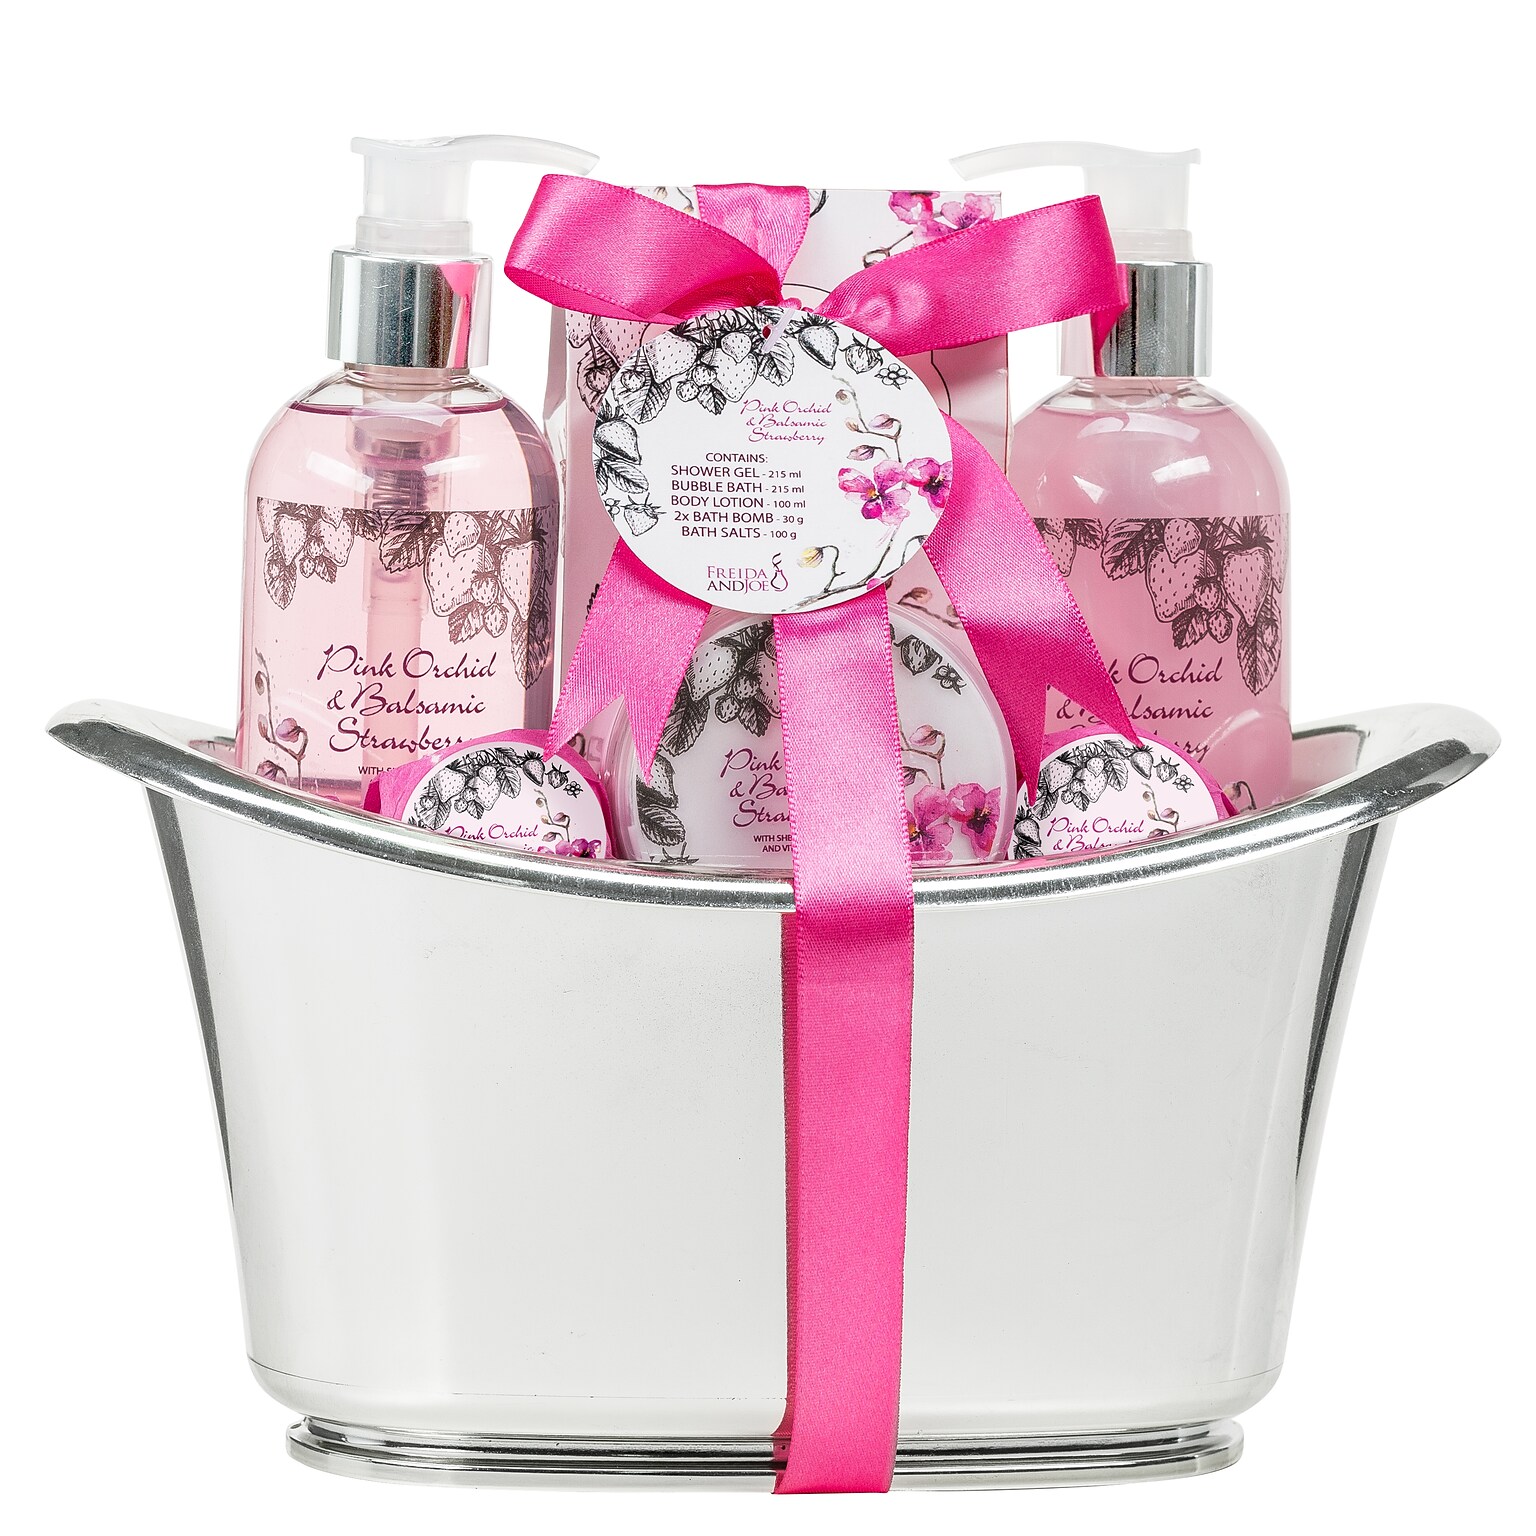 Freida and Joe Pink Orchid & Strawberry Fragrance Bath & Body Spa Gift Set in a Silver Tub Basket (FJ-114)